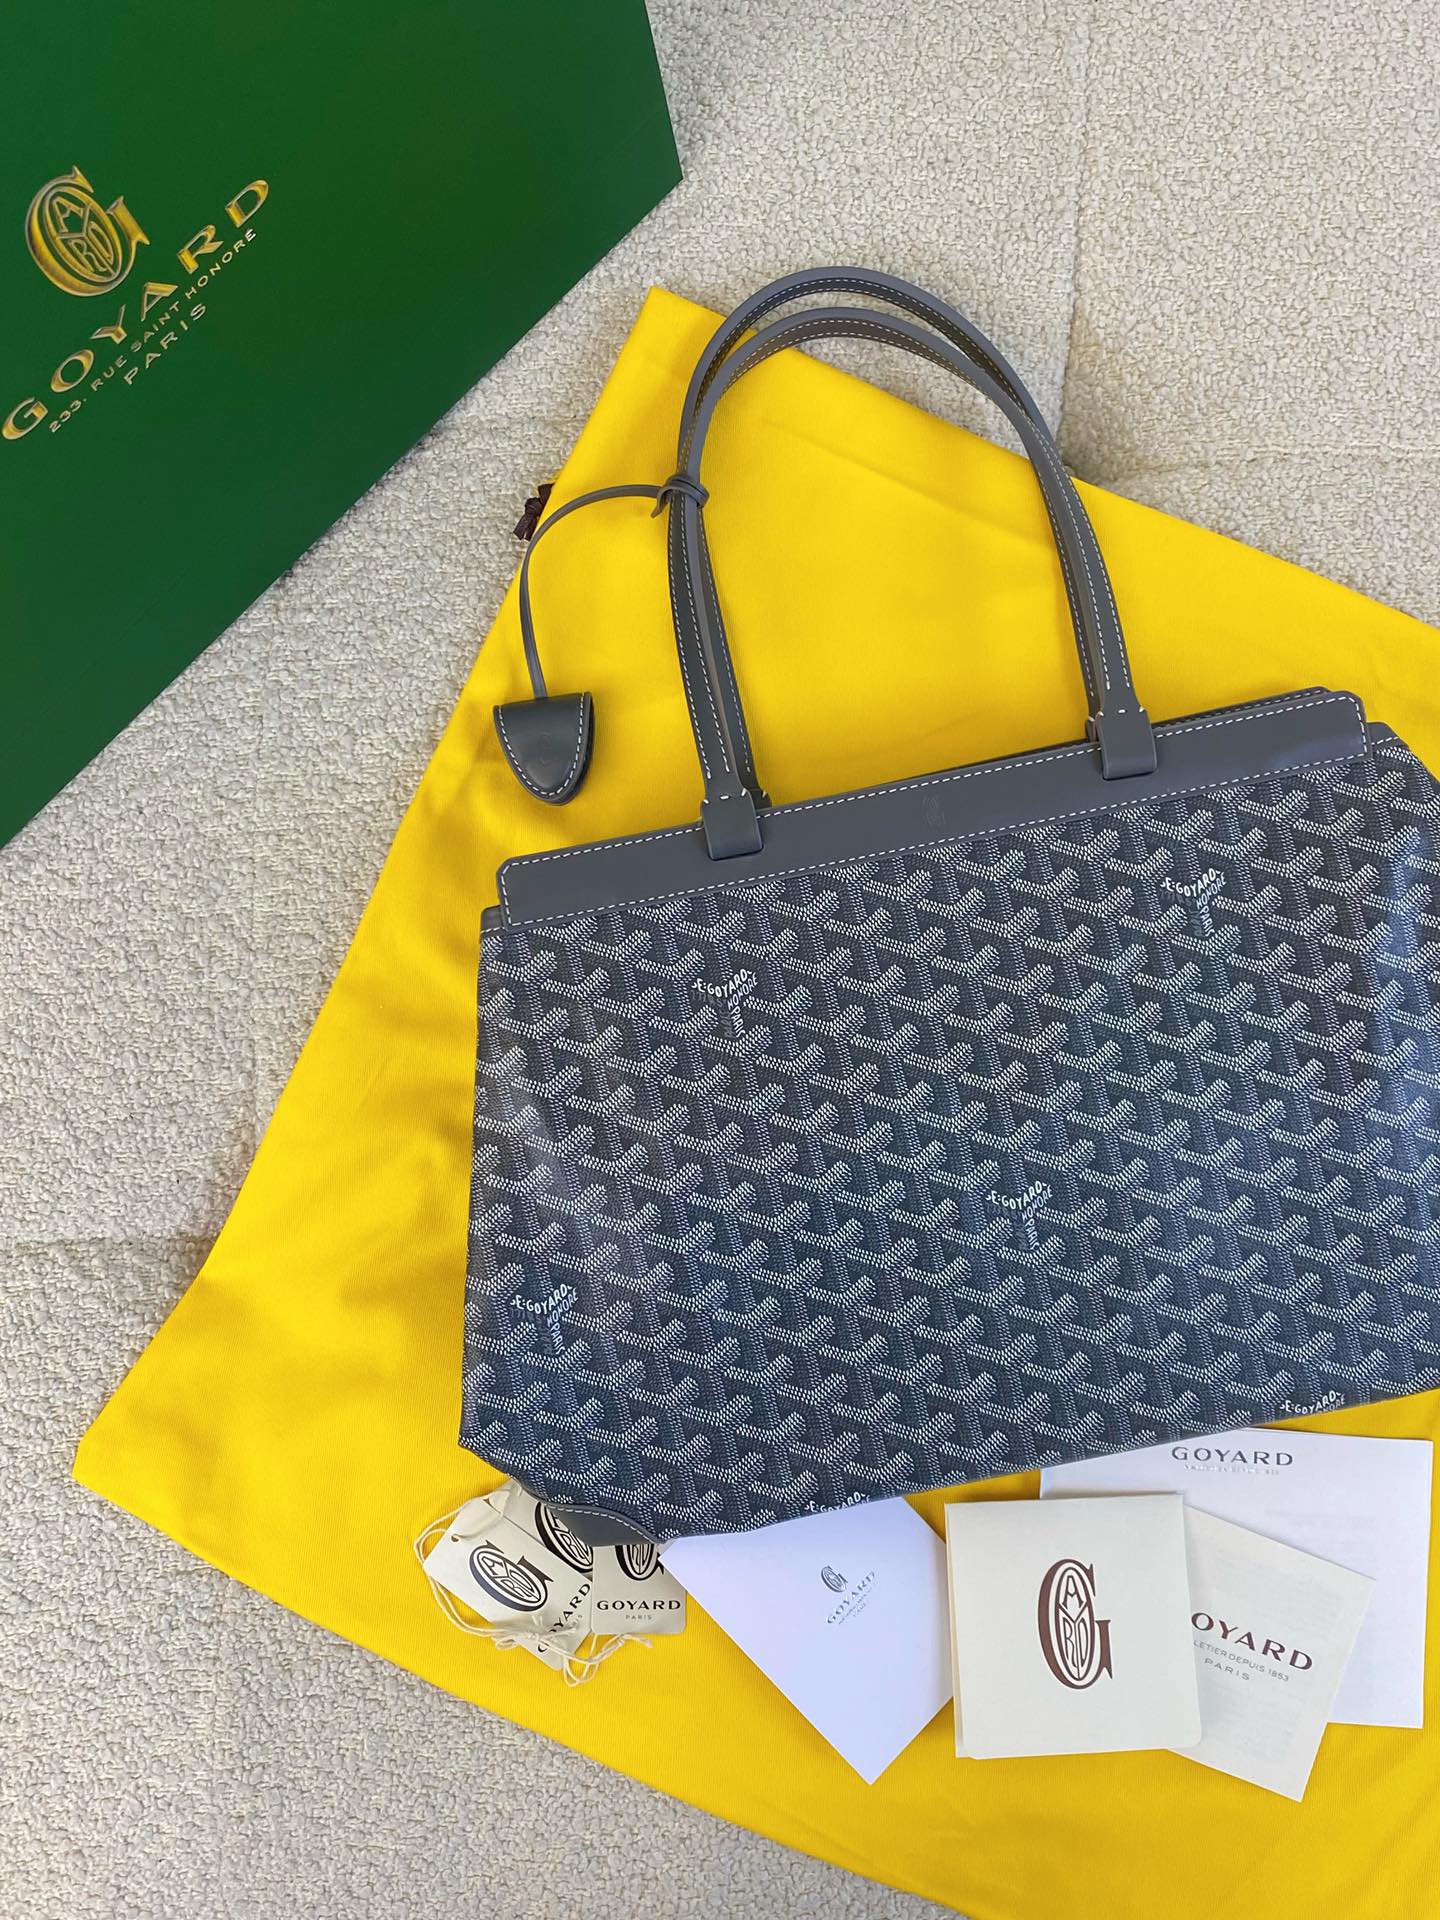 Goyard Handbags Tote Bags Grey Cowhide PU Belle